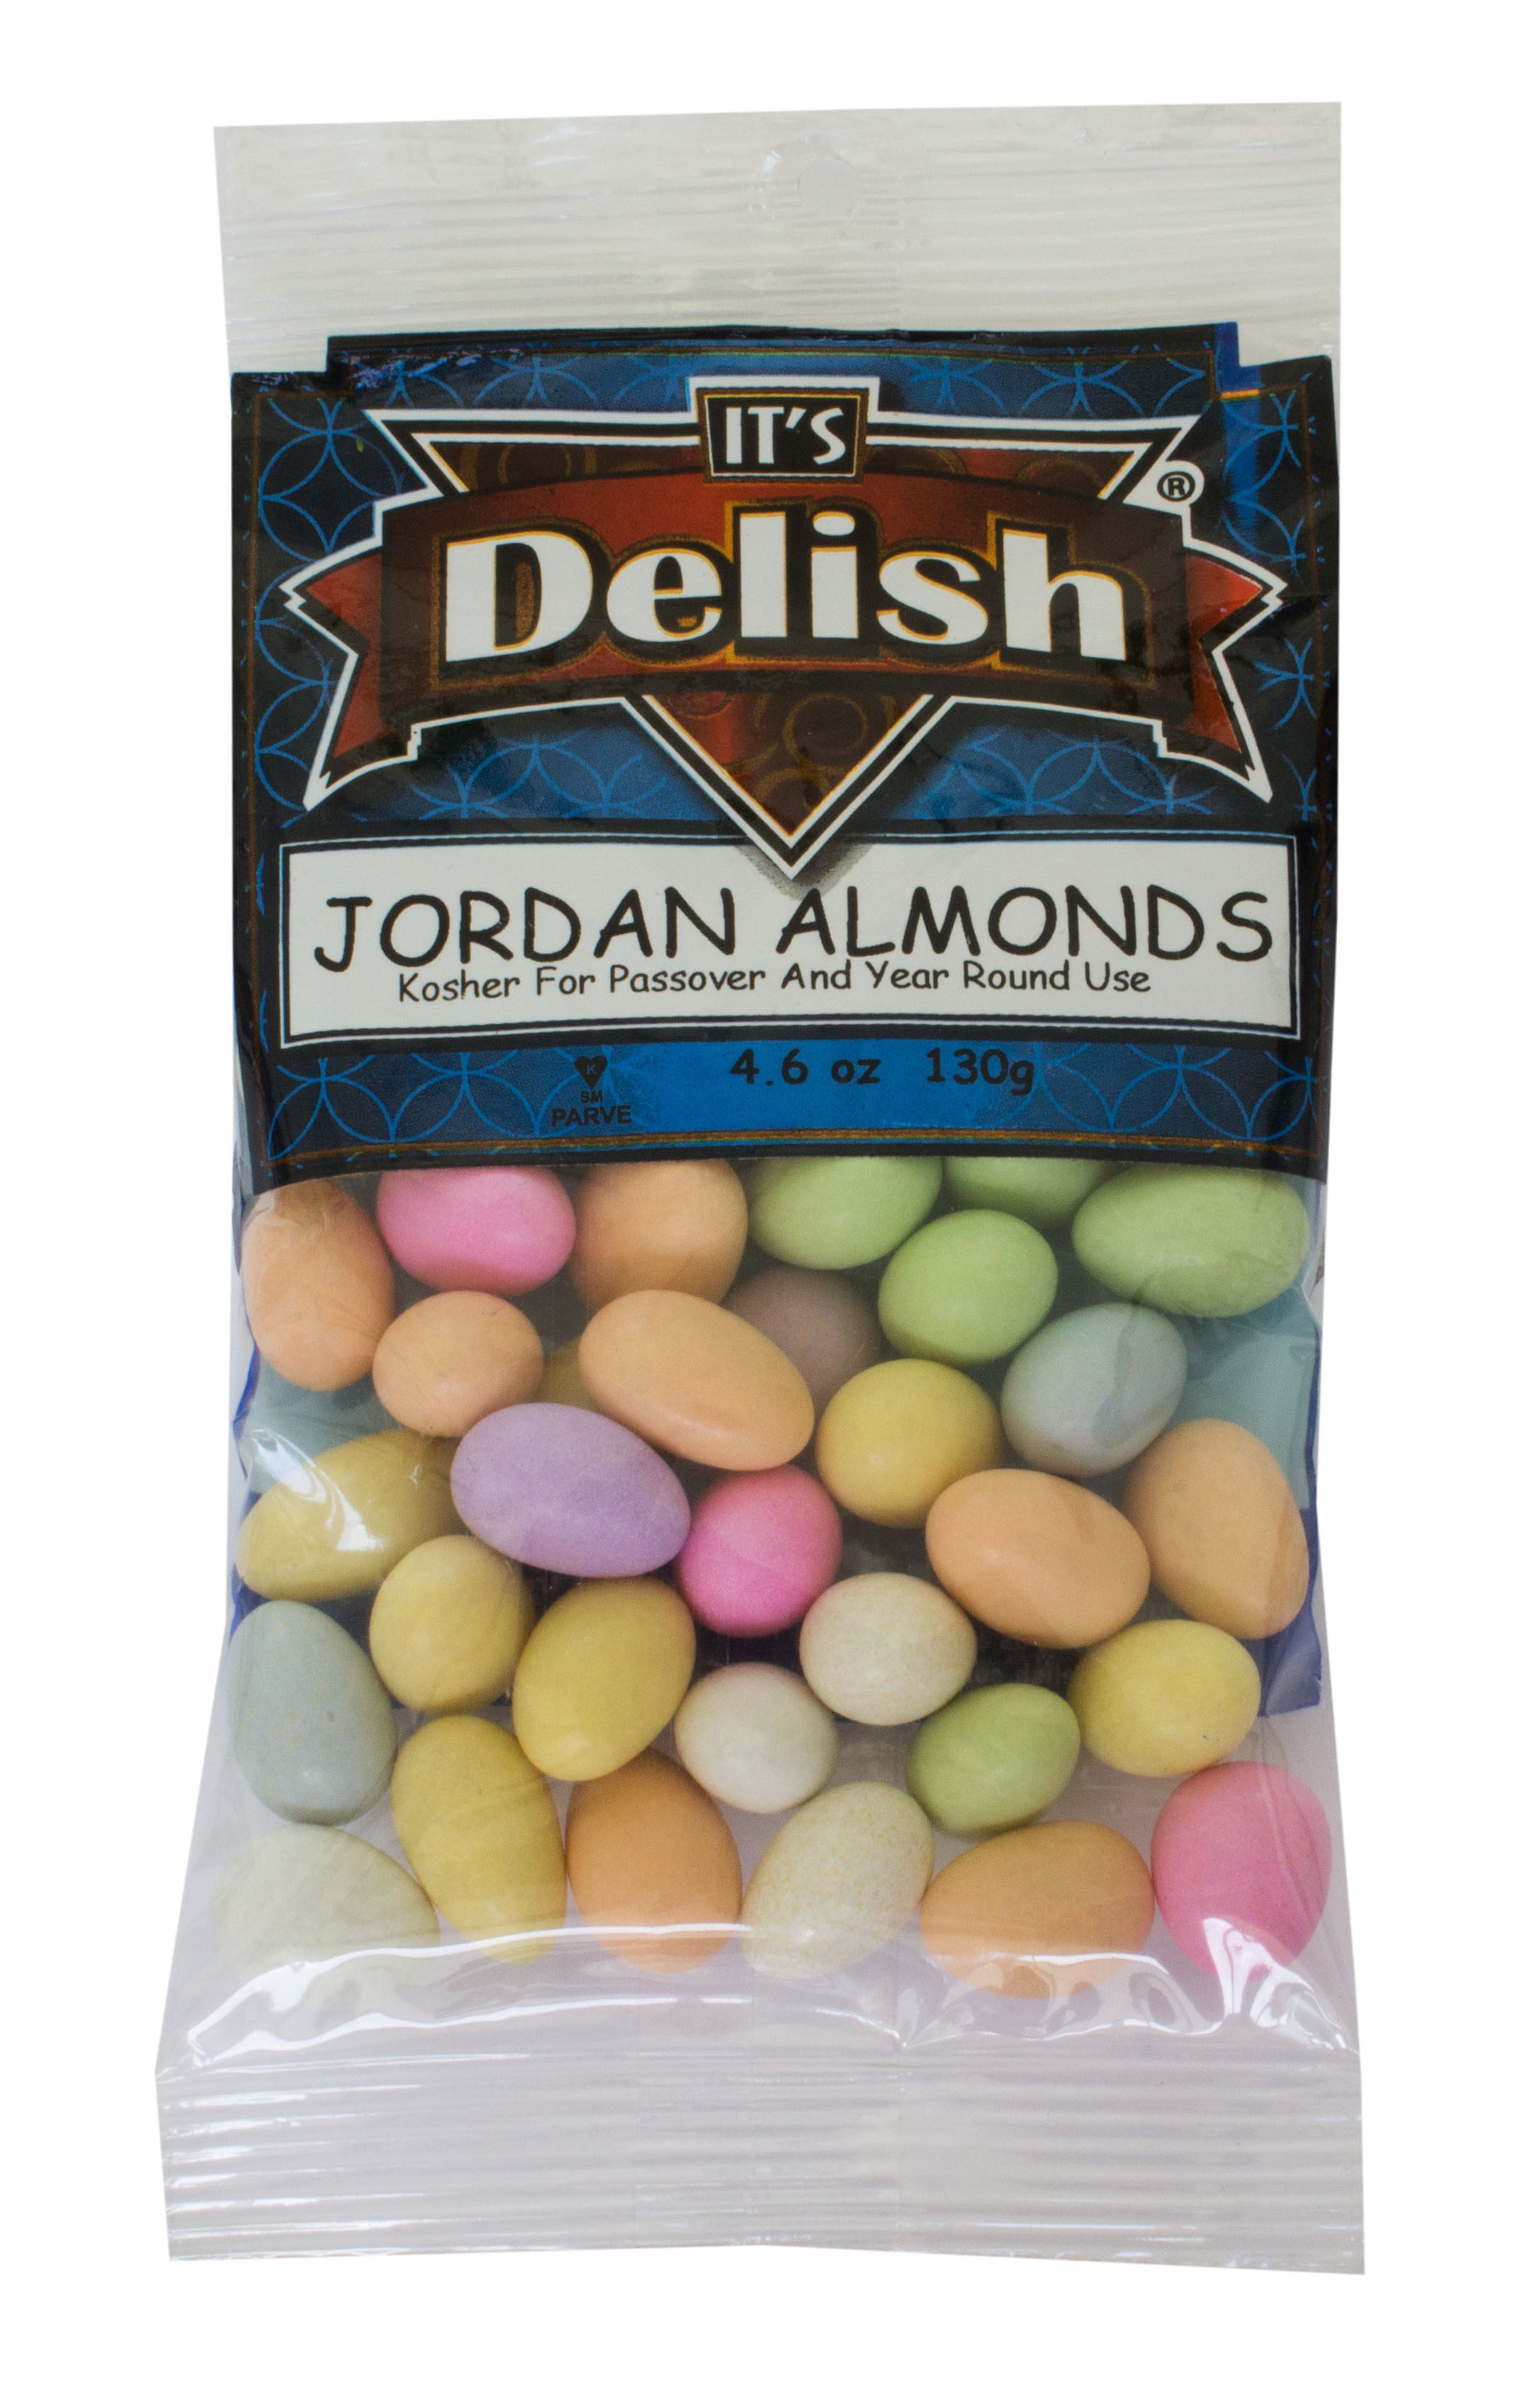 Assorted Jordan Almonds by Its Delish, 4.6 oz Bag - Walmart.com